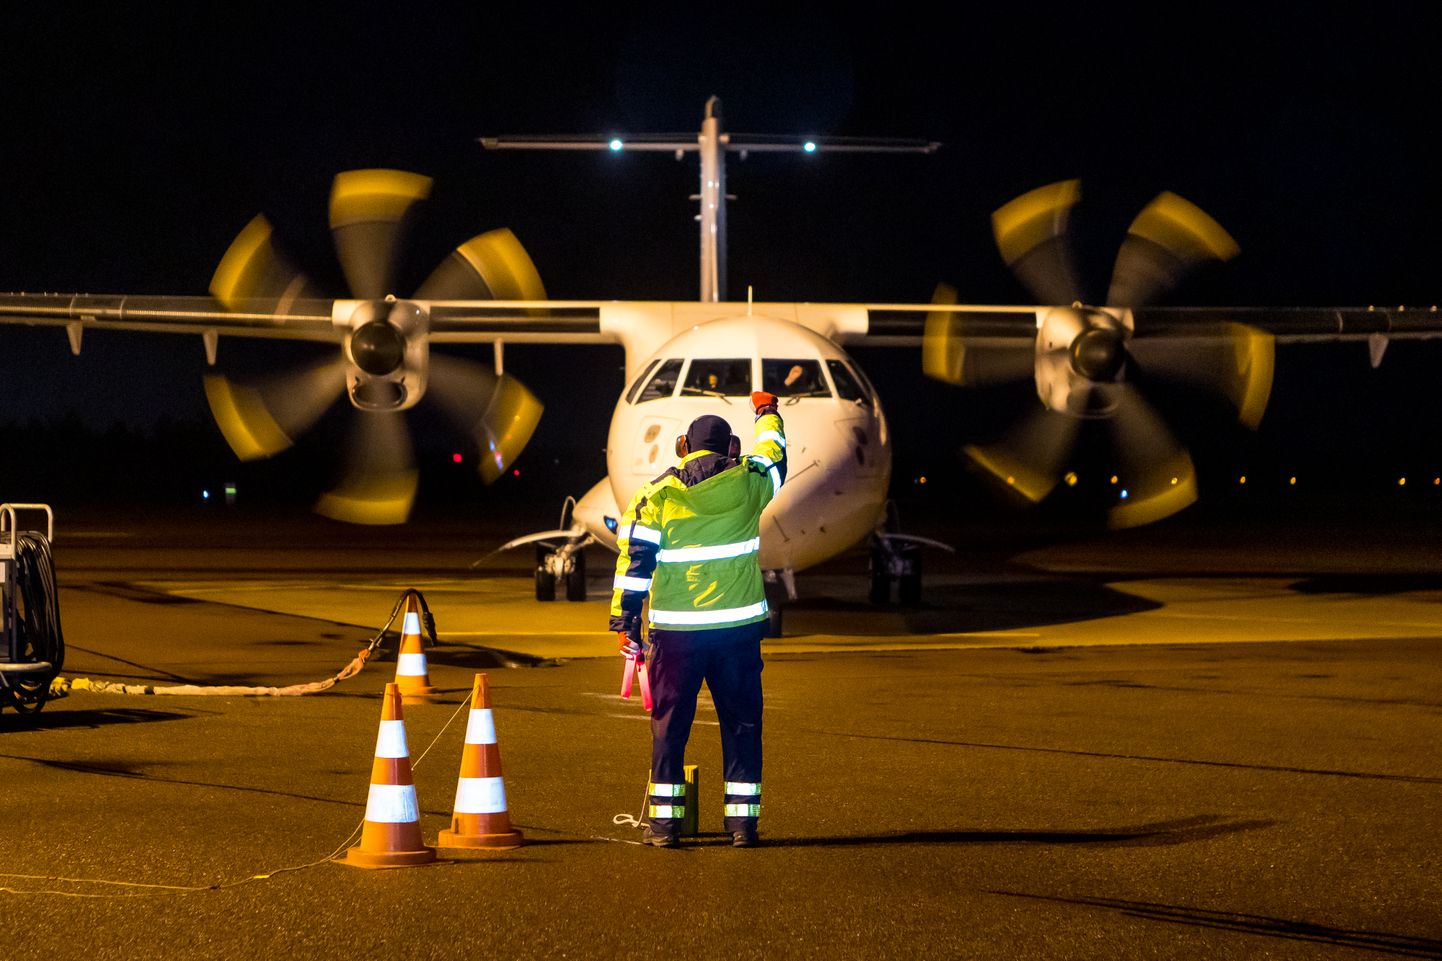 TERE TULEMAST: 48-kohaline turbopropellermootoriga ATR 42-500 teeb nädalas Saaremaale 12 reisi.